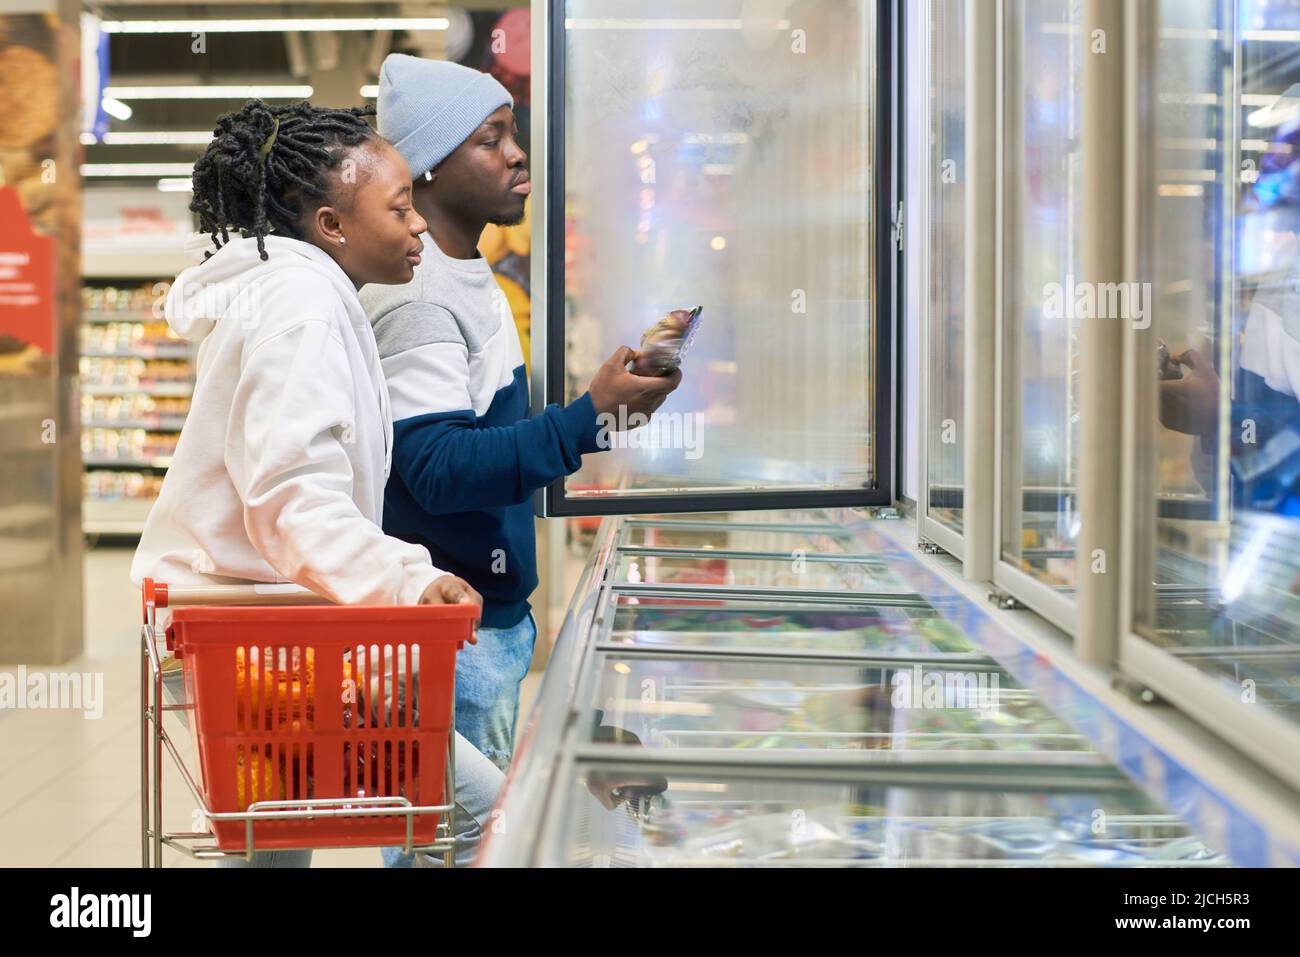 Junges Paar mit Einkaufswagen, das im Supermarkt Tiefkühlprodukte auswählt, während ein Mann eine Obstpackung aus dem Kühlschrank nimmt Stockfoto